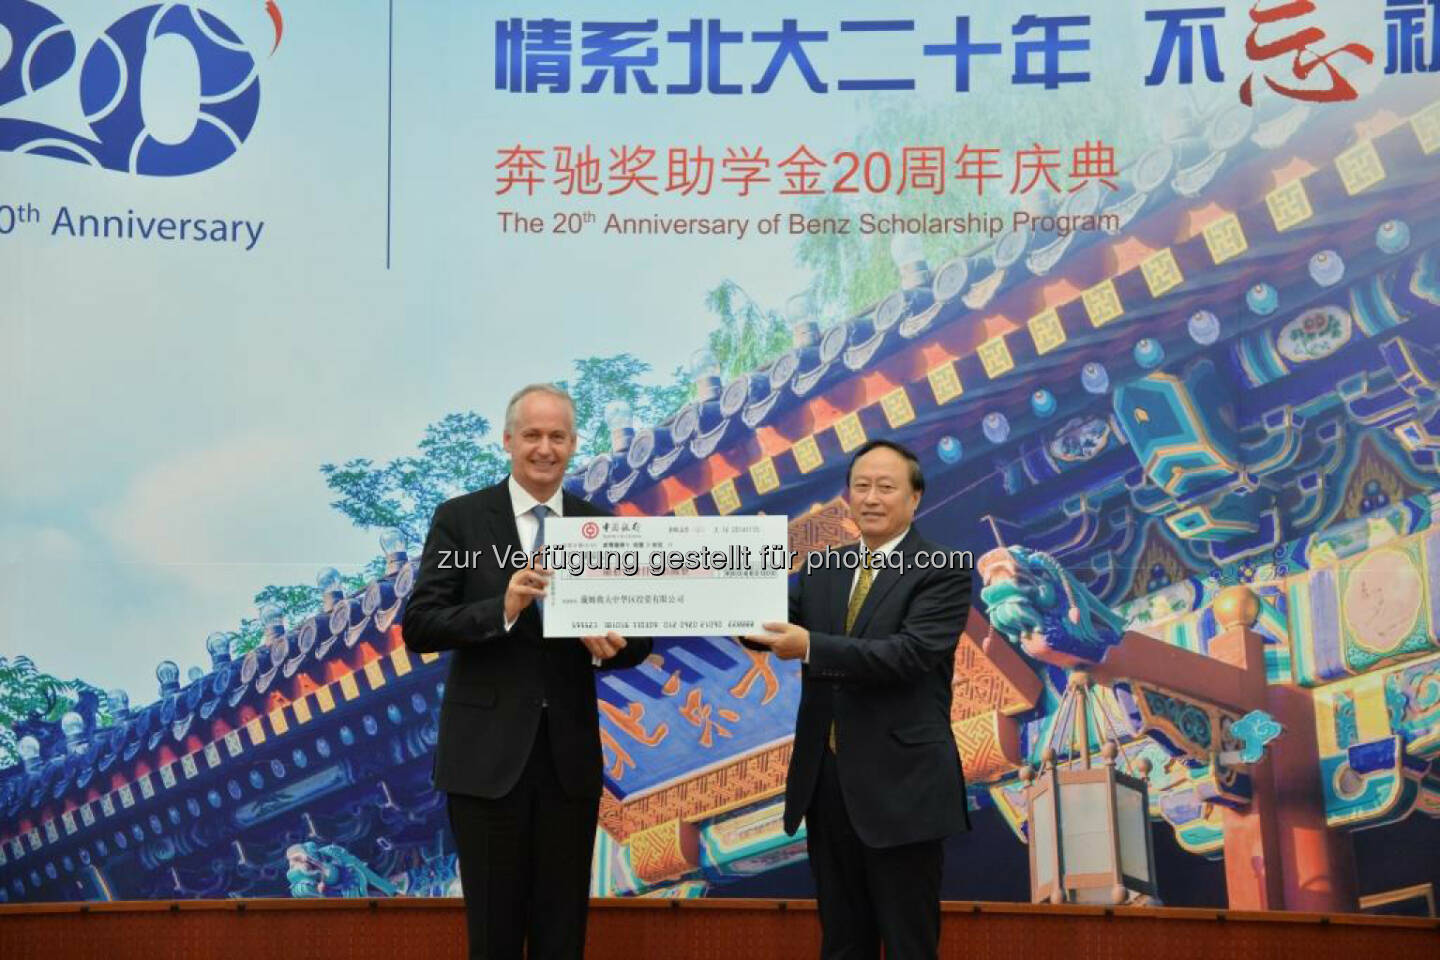 Hubertus Troska, Vorstandsmitglied der Daimler AG verantwortlich für China, und Zhu Shanlu, Vorsitzender des Peking University Council, bei den Feierlichkeiten zum 20jährigen Jubiläum des Daimler Stipendienprogramms an der Peking Universität. 